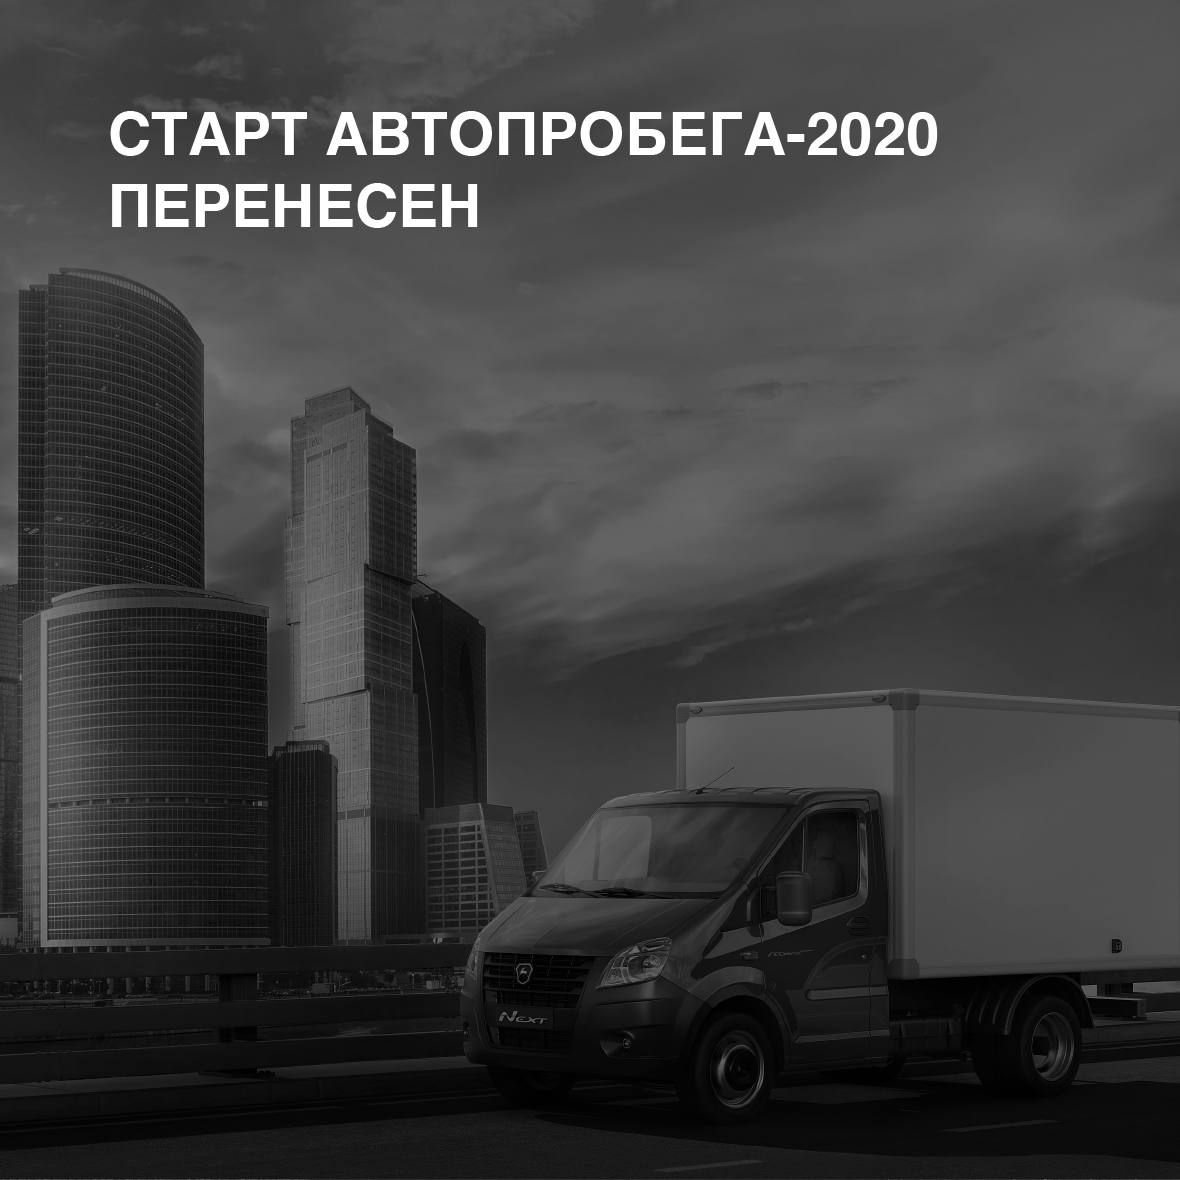 Старт Автопробега-2020 переносится!